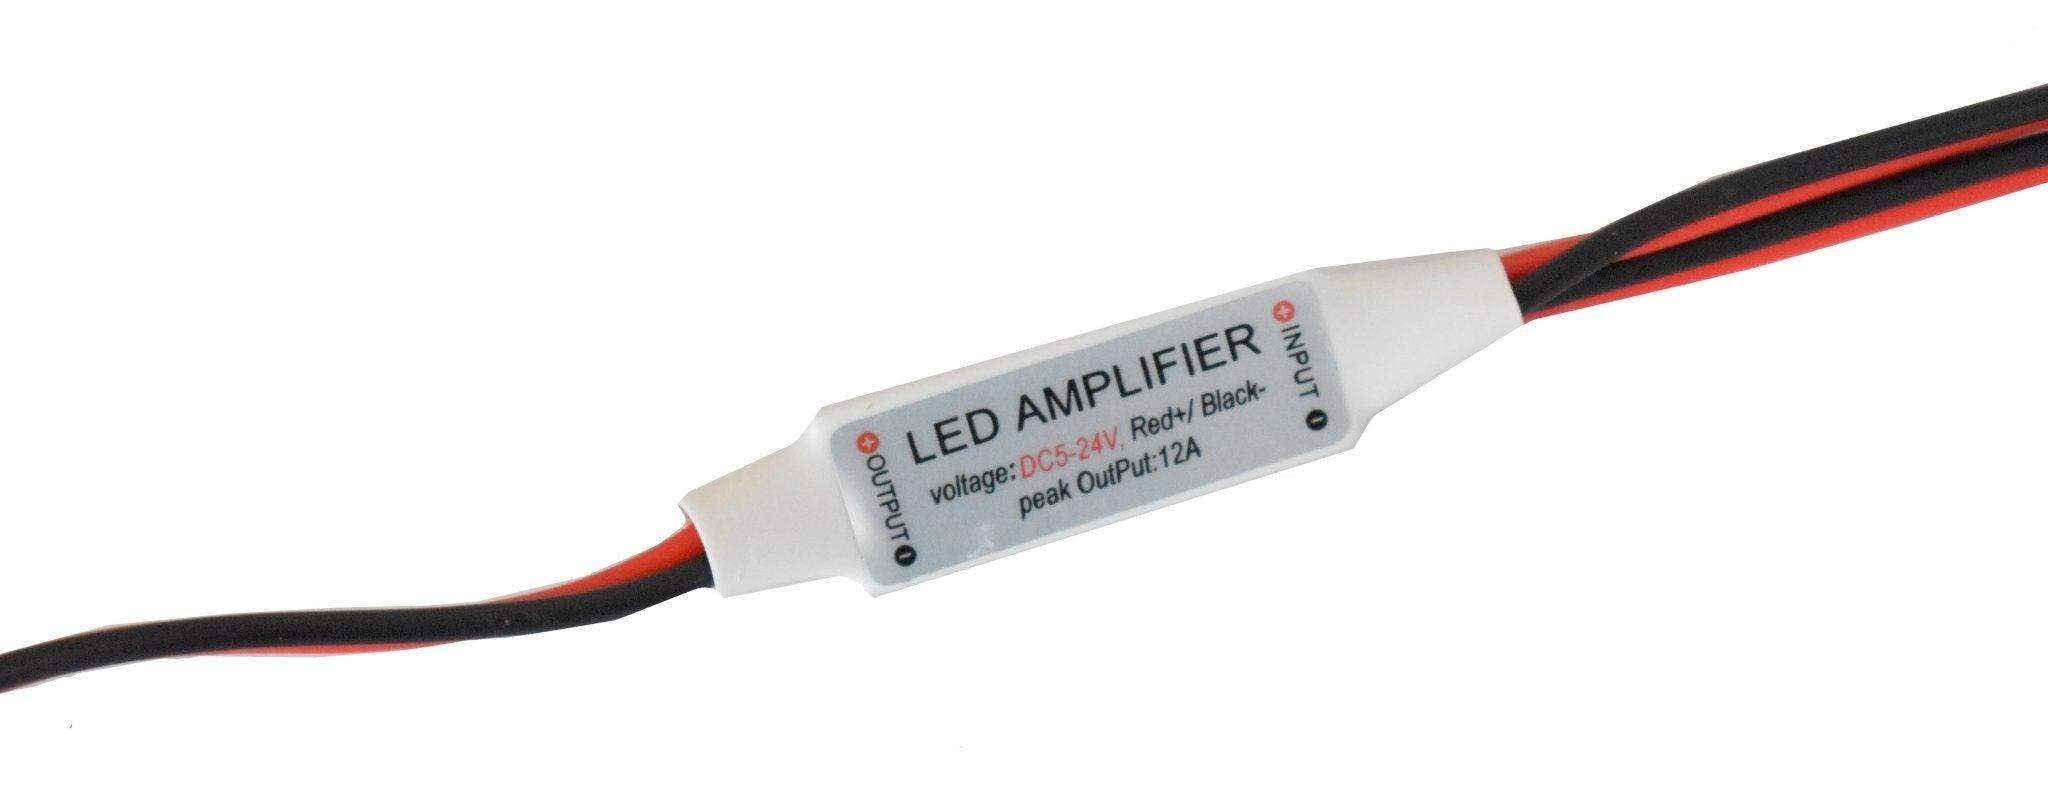 Amplificador Para Tira Led 1 Color Sencillo |+2,000 reseñas 4.8/5 ⭐